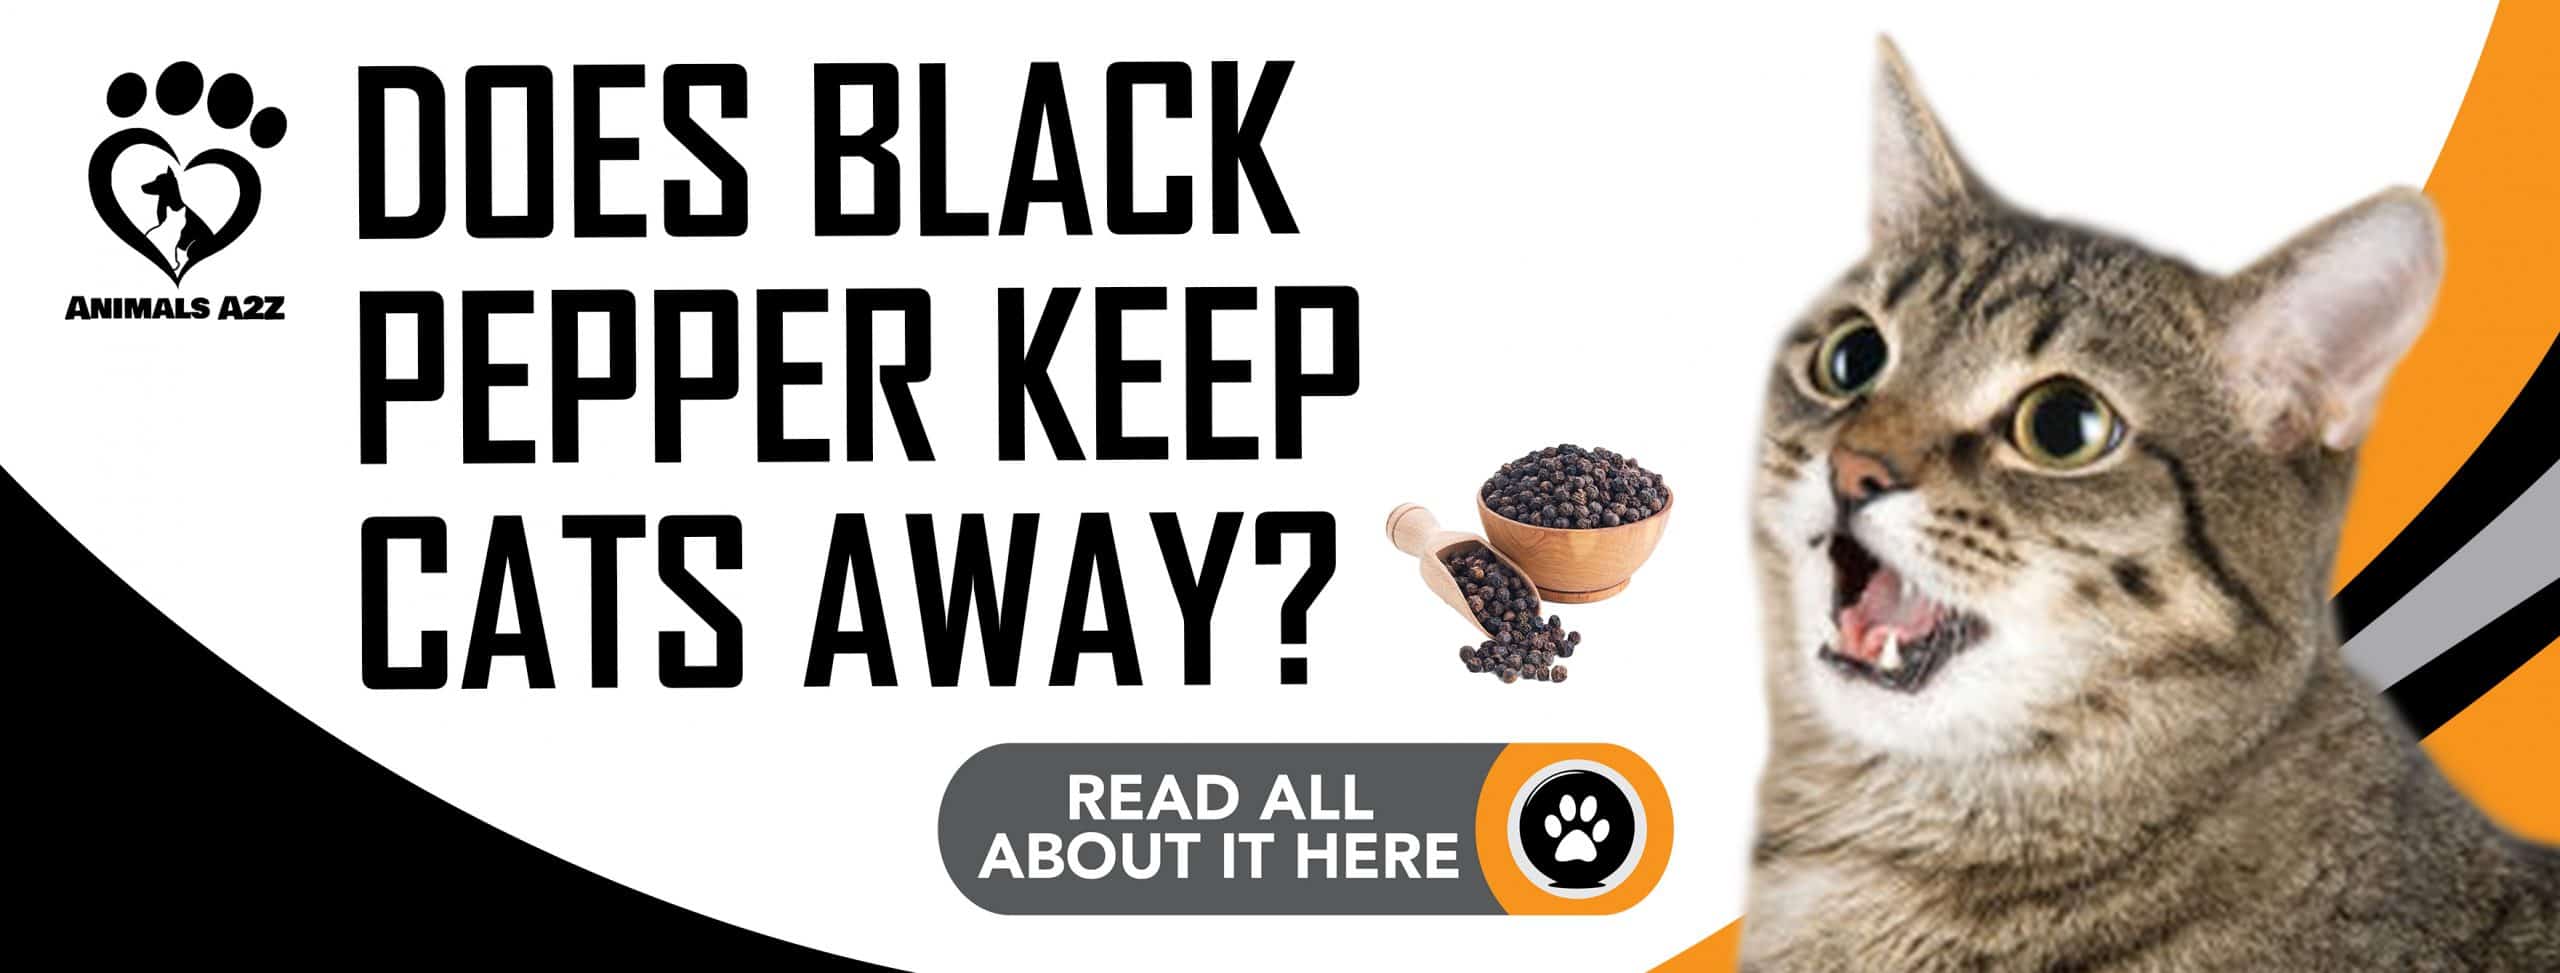 Hält schwarzer Pfeffer Katzen fern?